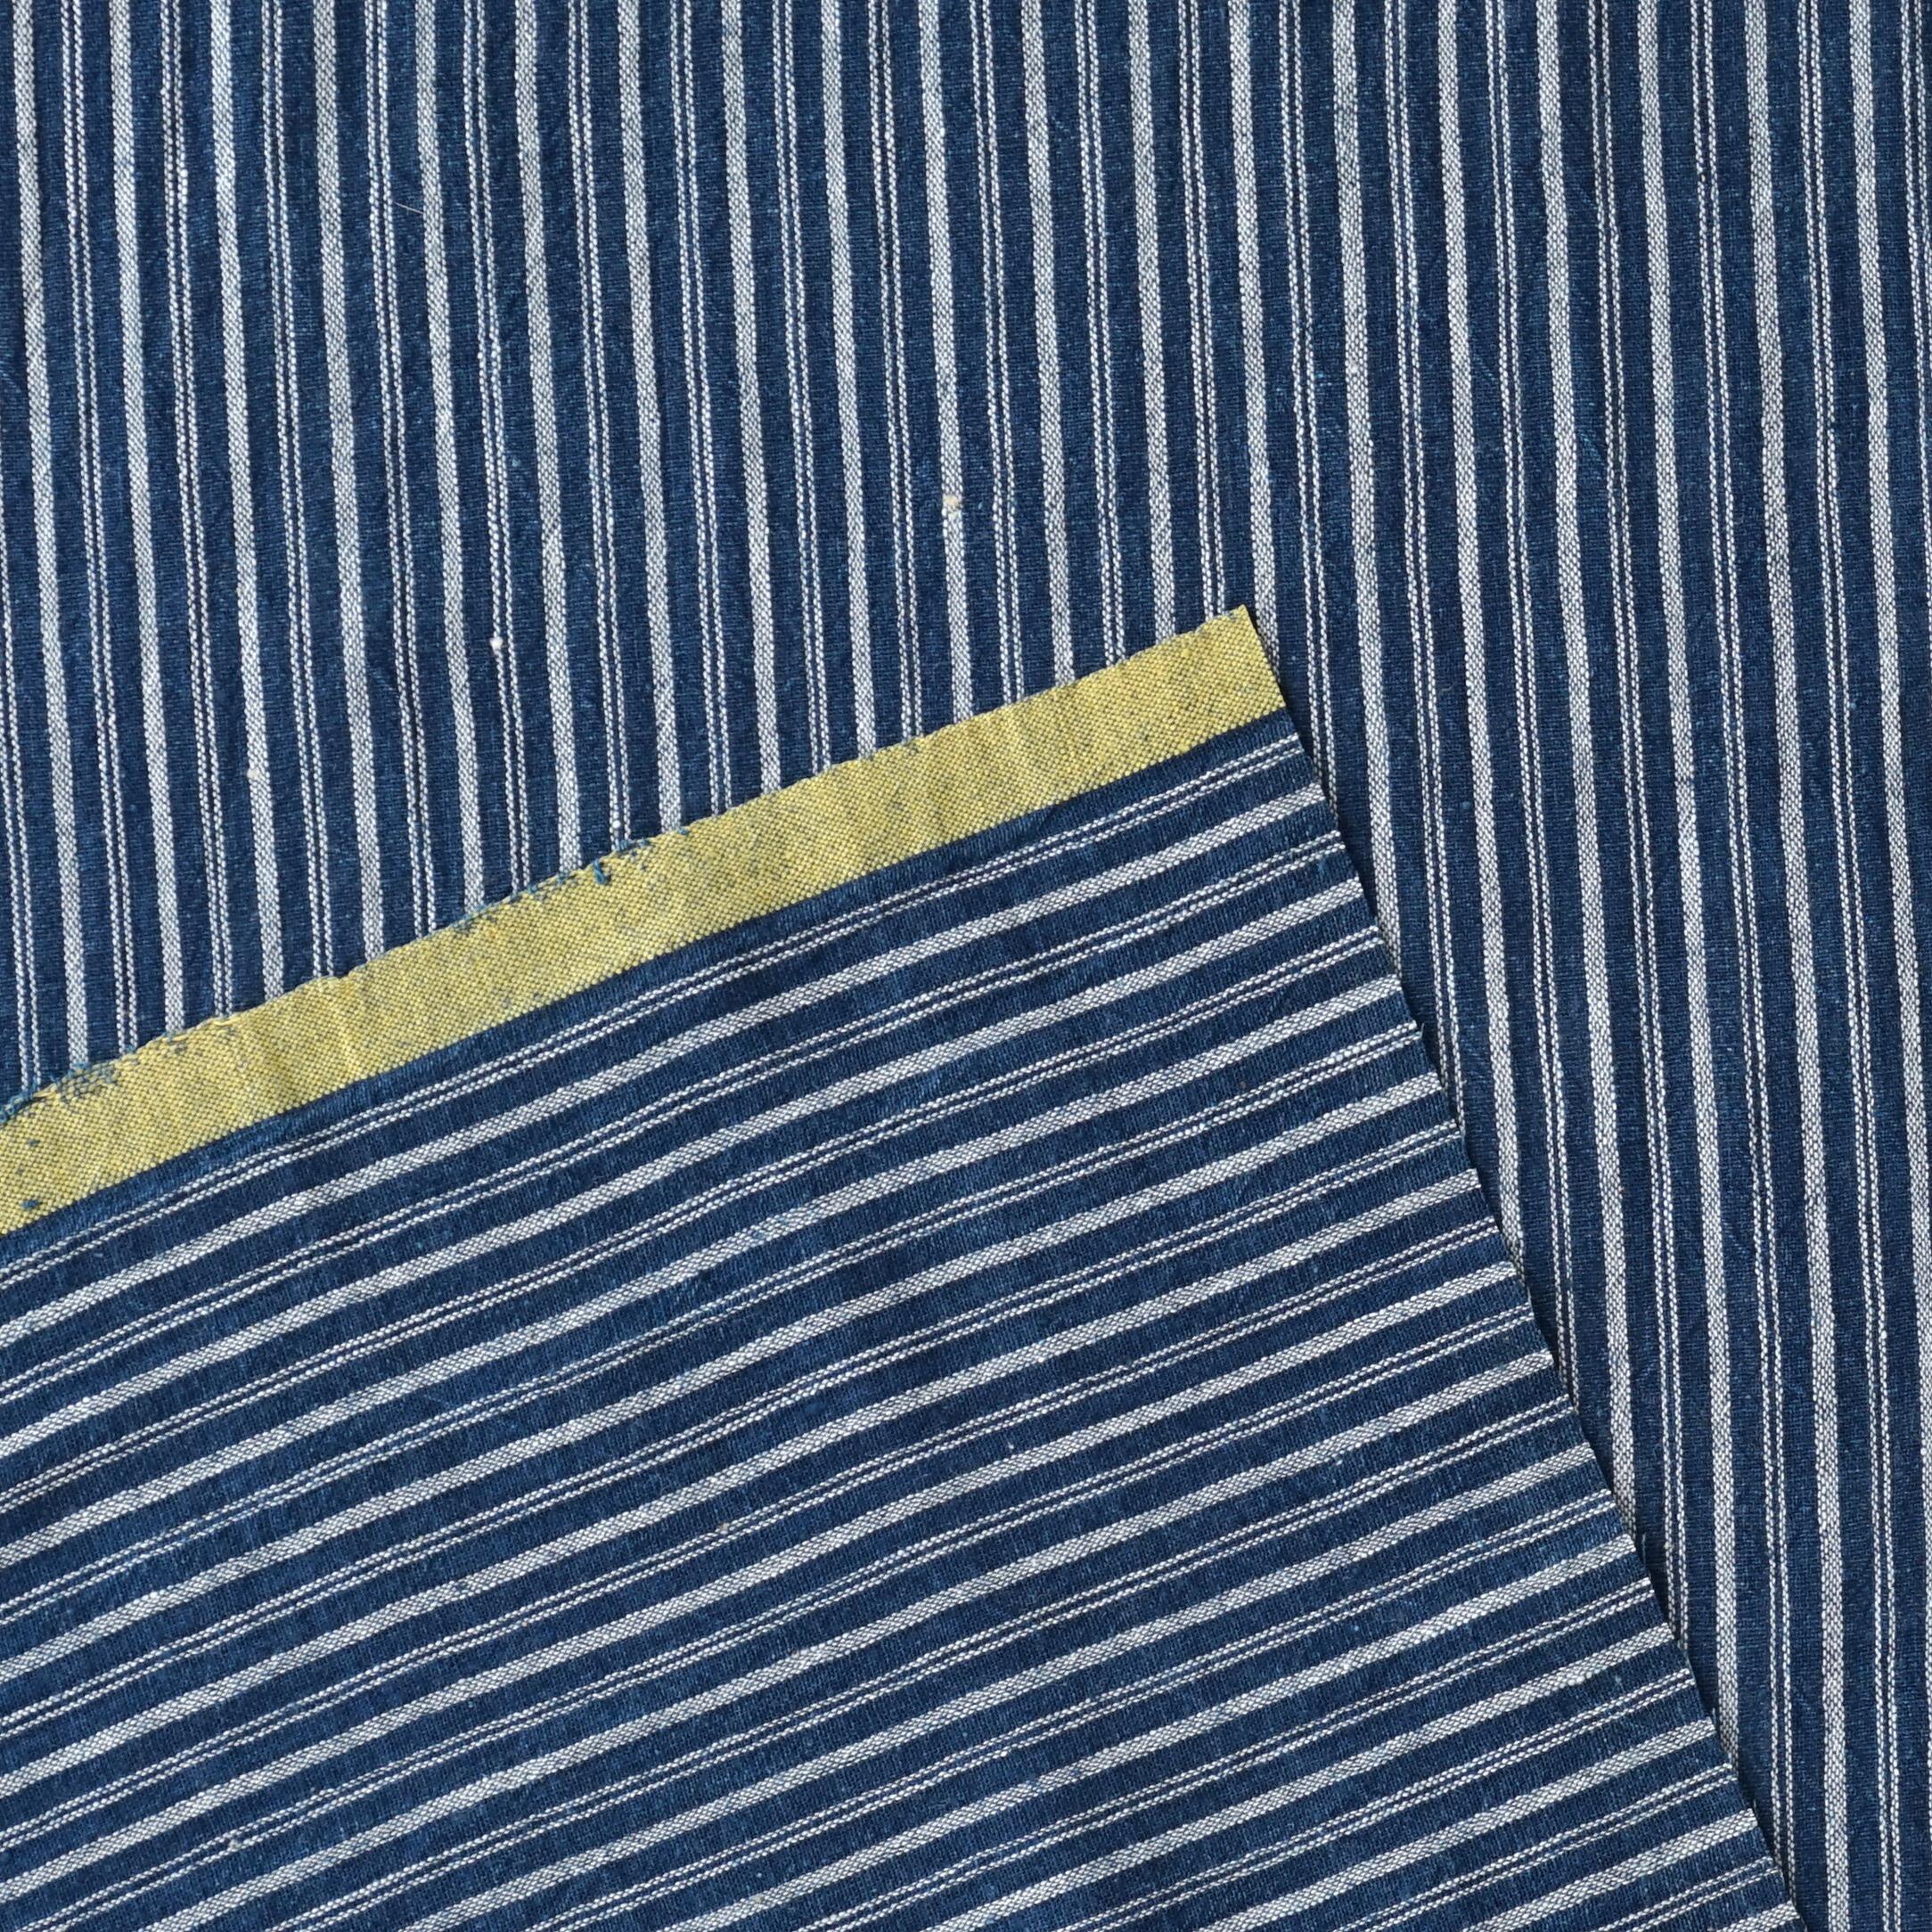 100% Handloom Woven Cotton - Double Stripes - Natural Indigo Warp & Weft, White Warp - Selvedge